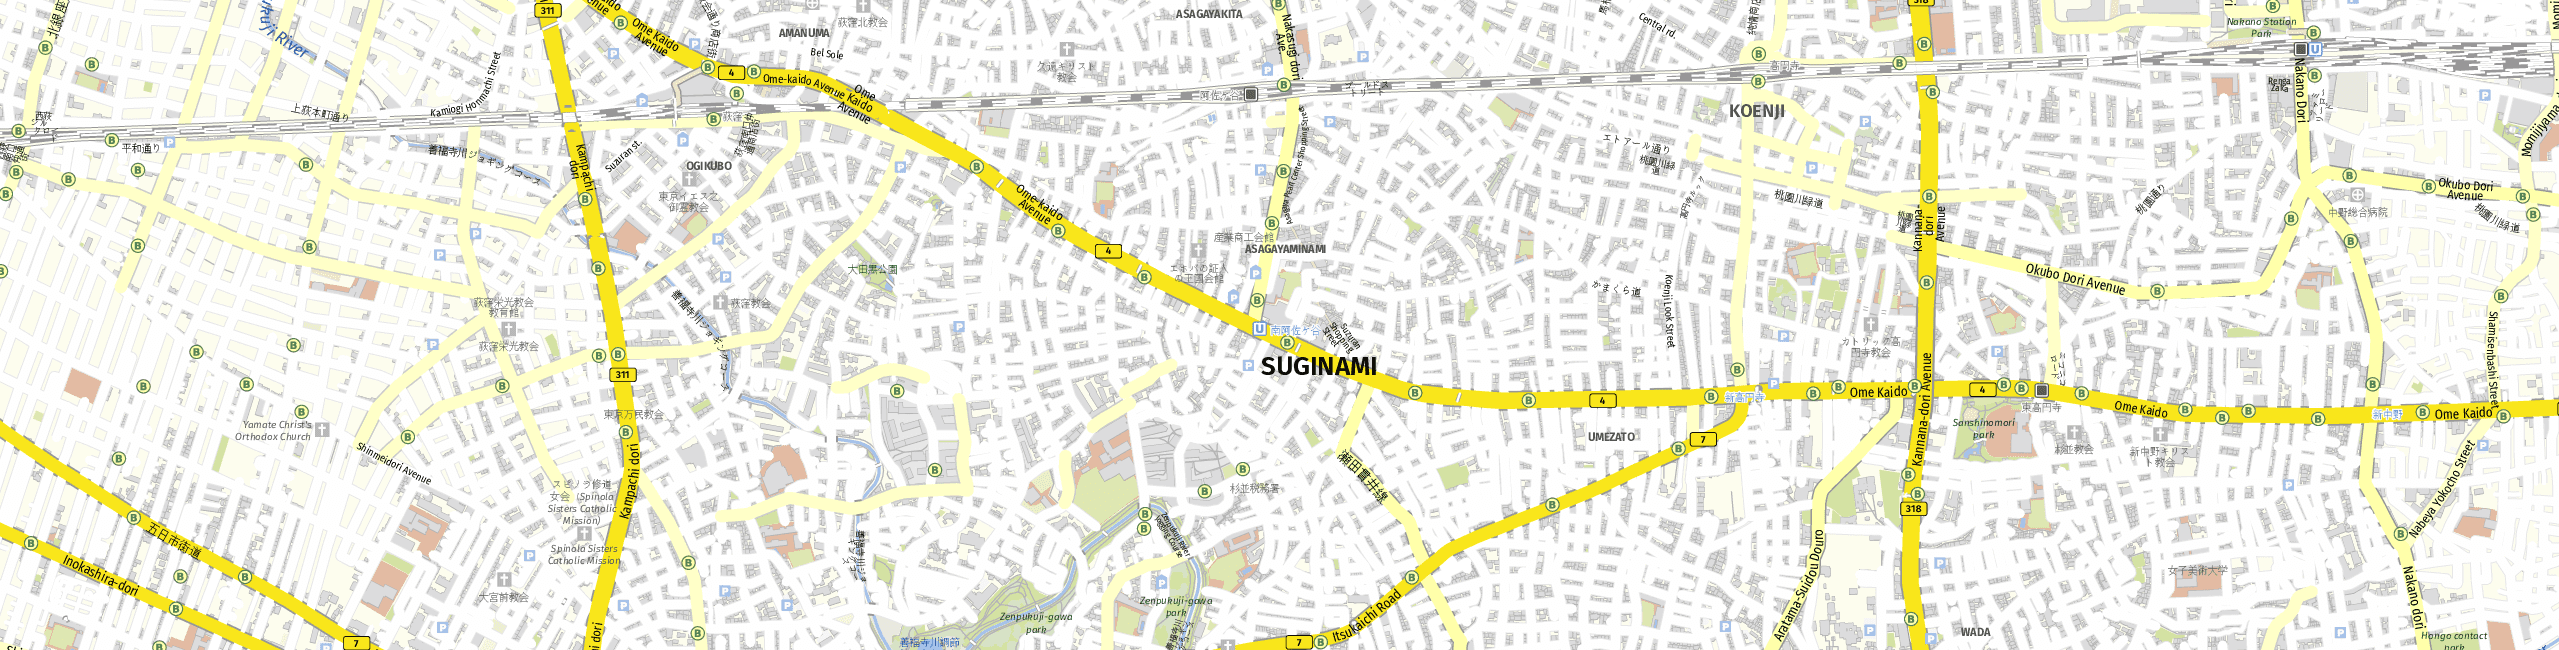 Stadtplan Suginami zum Downloaden.